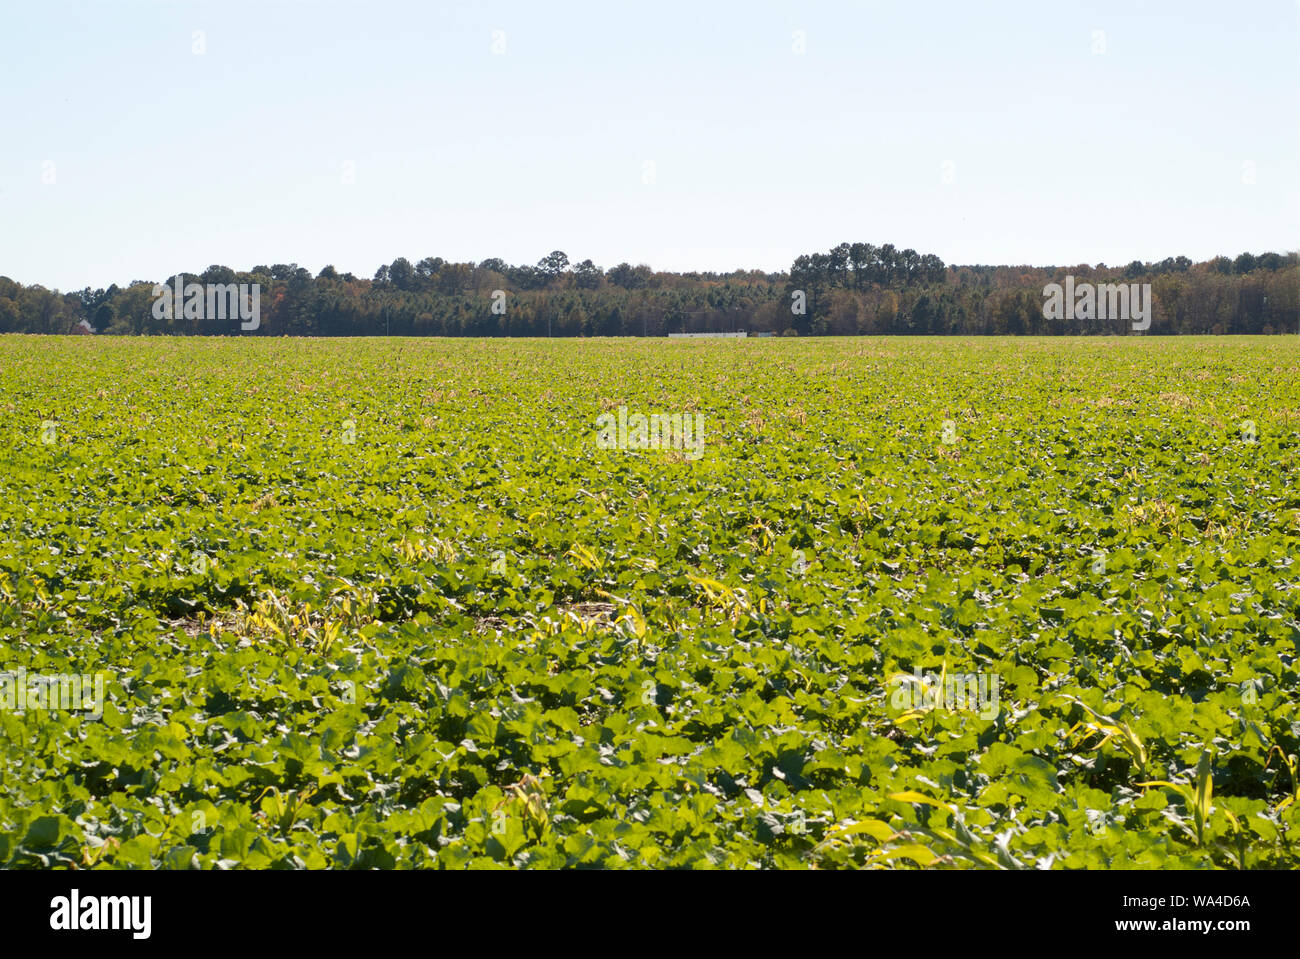 GREEN ACRES: Frische und reichliche Gemüseanbauflächen können in den offenen Farmlandschaften von Virginia abseits des Korridors von I95 gesehen werden. Stockfoto